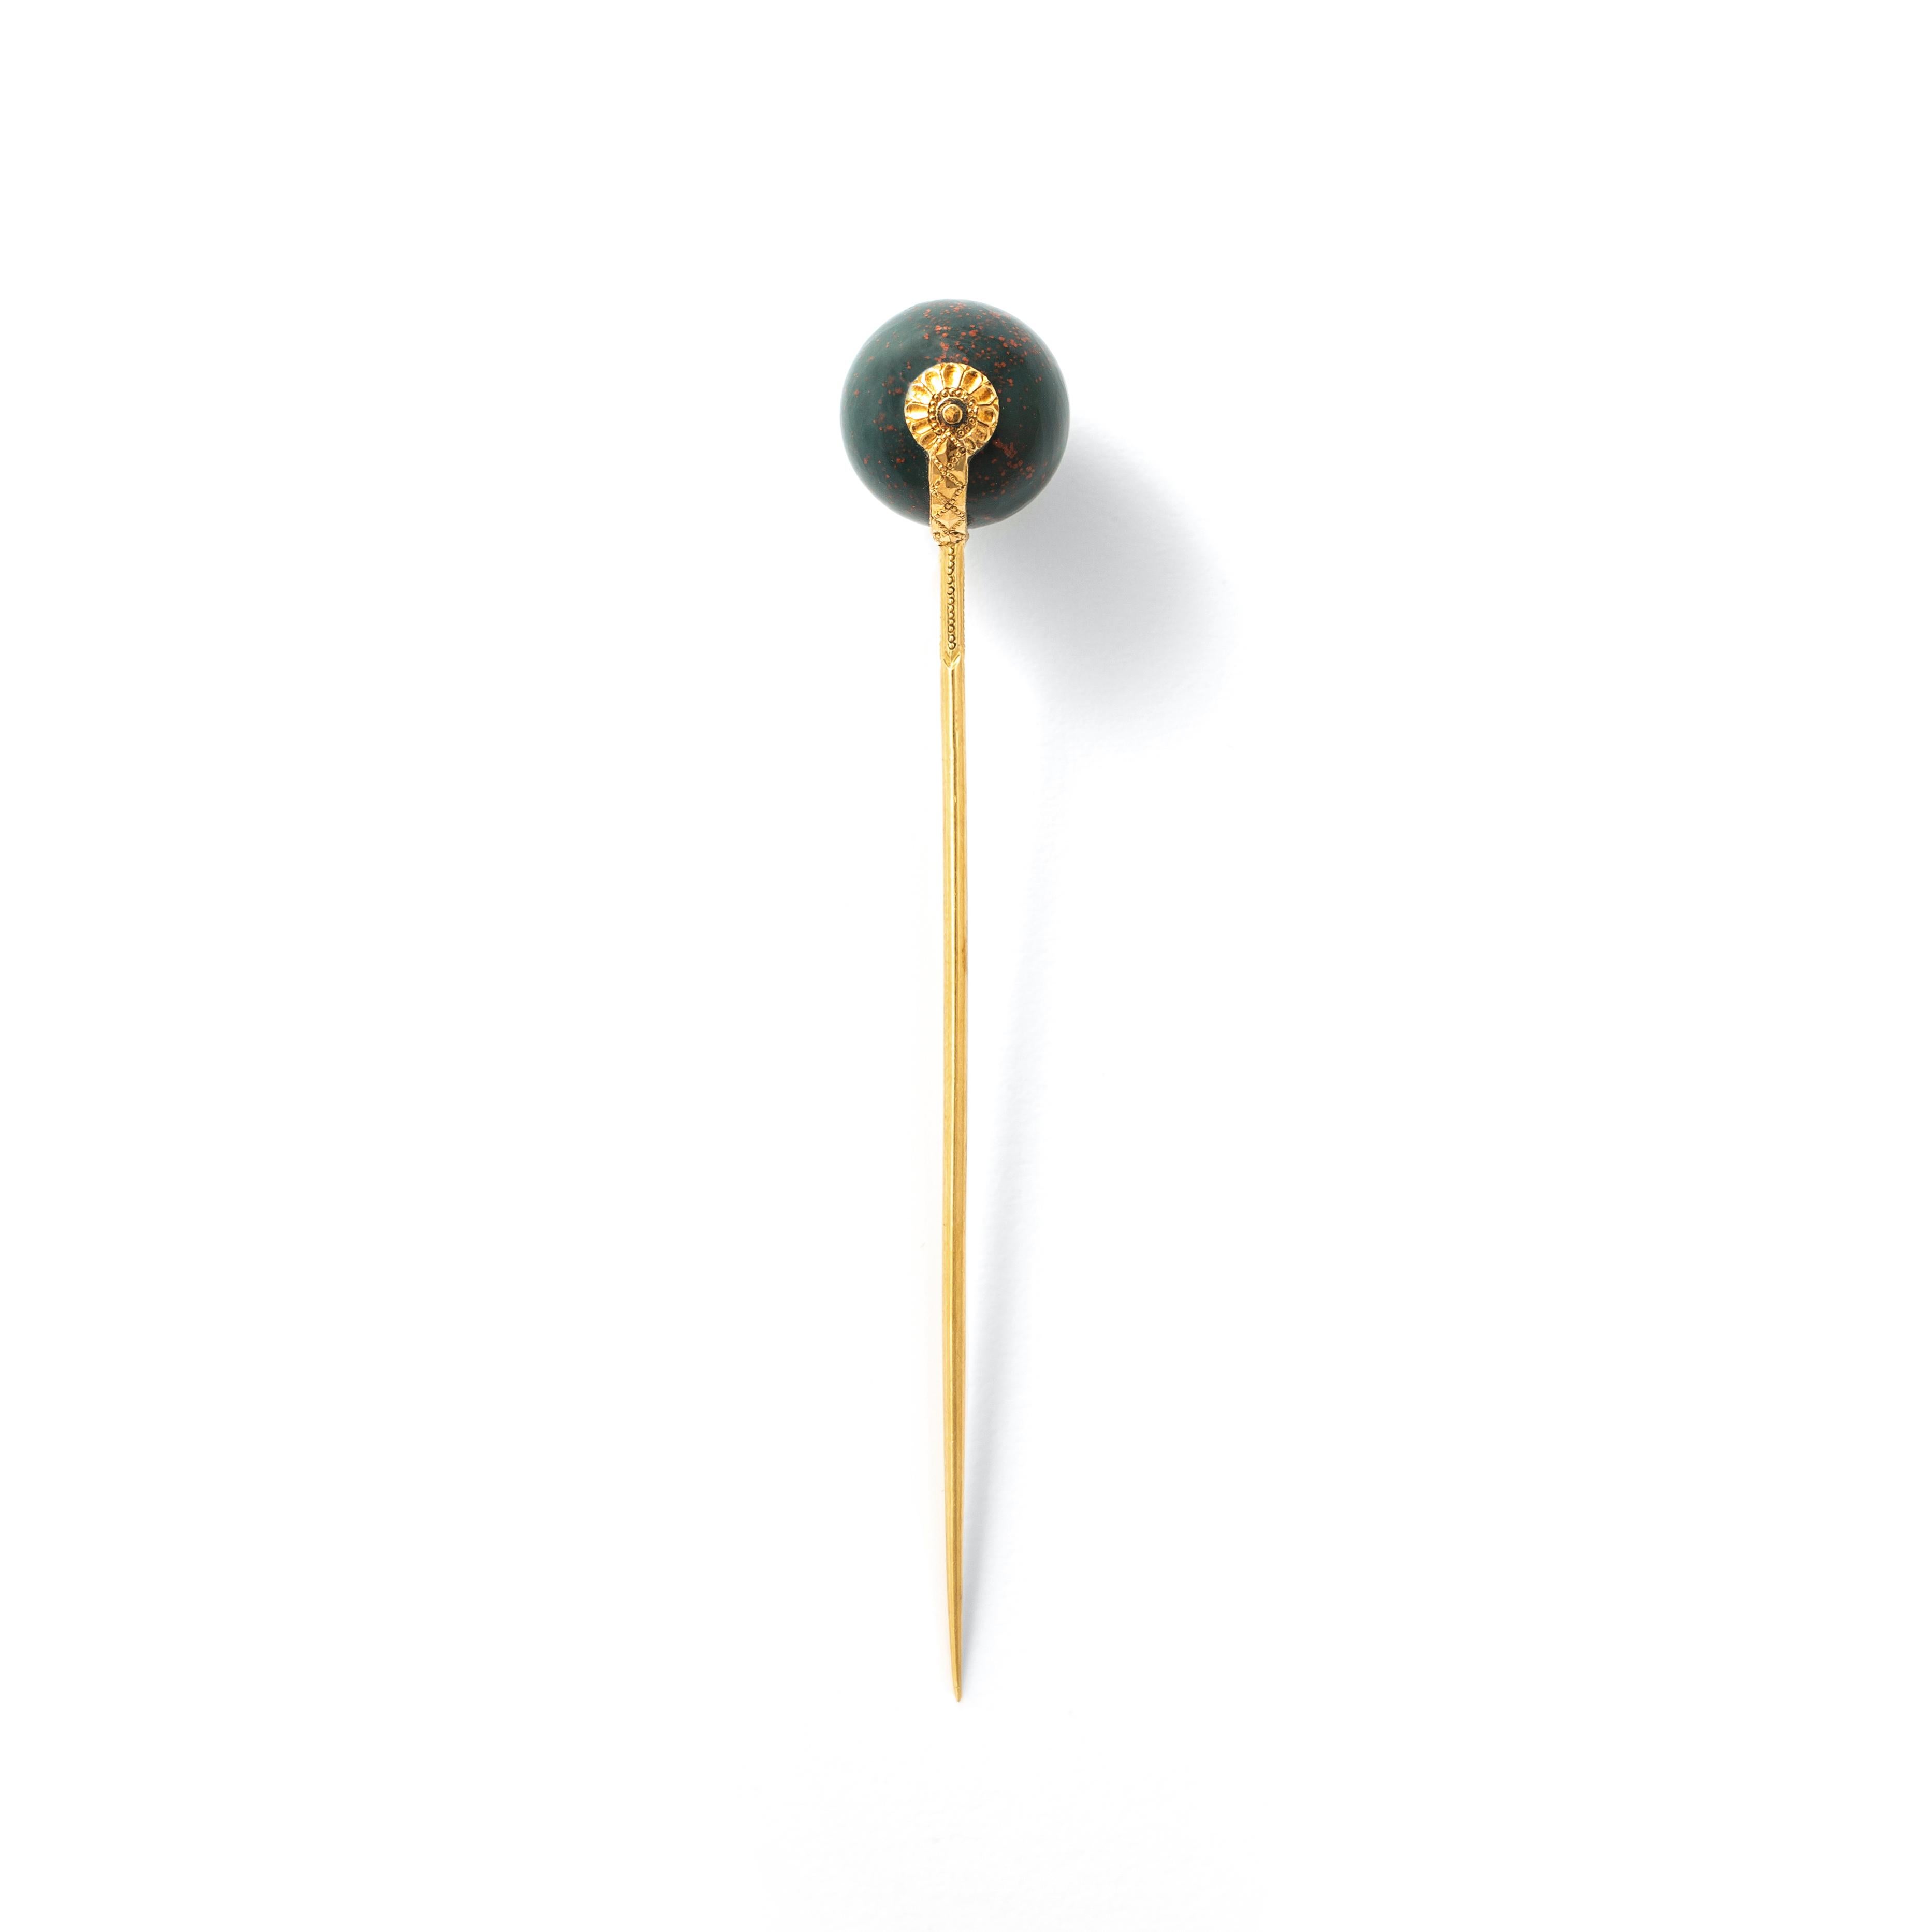 Gelbgold 18k Stern auf Jaspis Sphere Pin. Antike.
Anfang des 20. Jahrhunderts.
Gesamtlänge: 8.80 Zentimeter.
Gesamtgewicht: 6,55 Gramm.